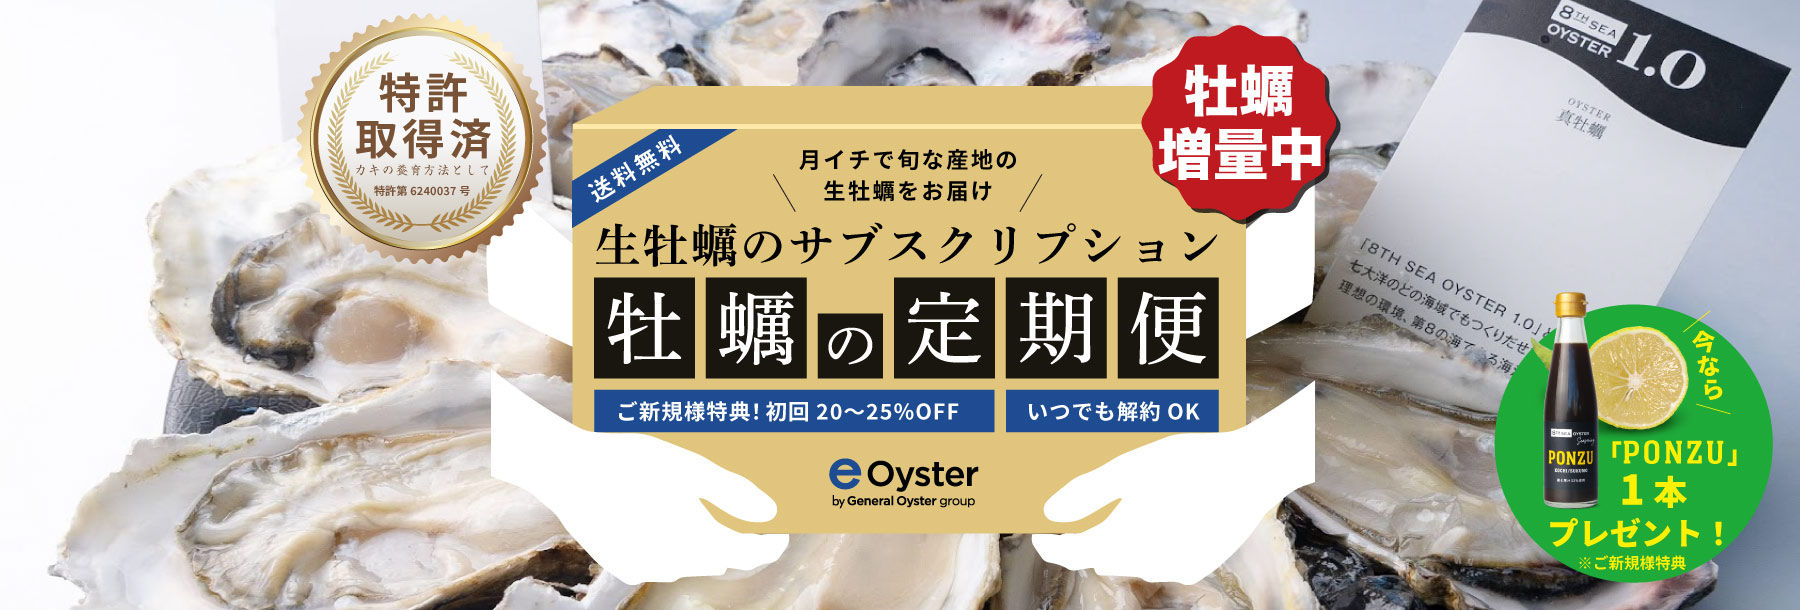 毎月旬な産地の生牡蠣や牡蠣の加工食品などをお届け 牡蠣の定期便